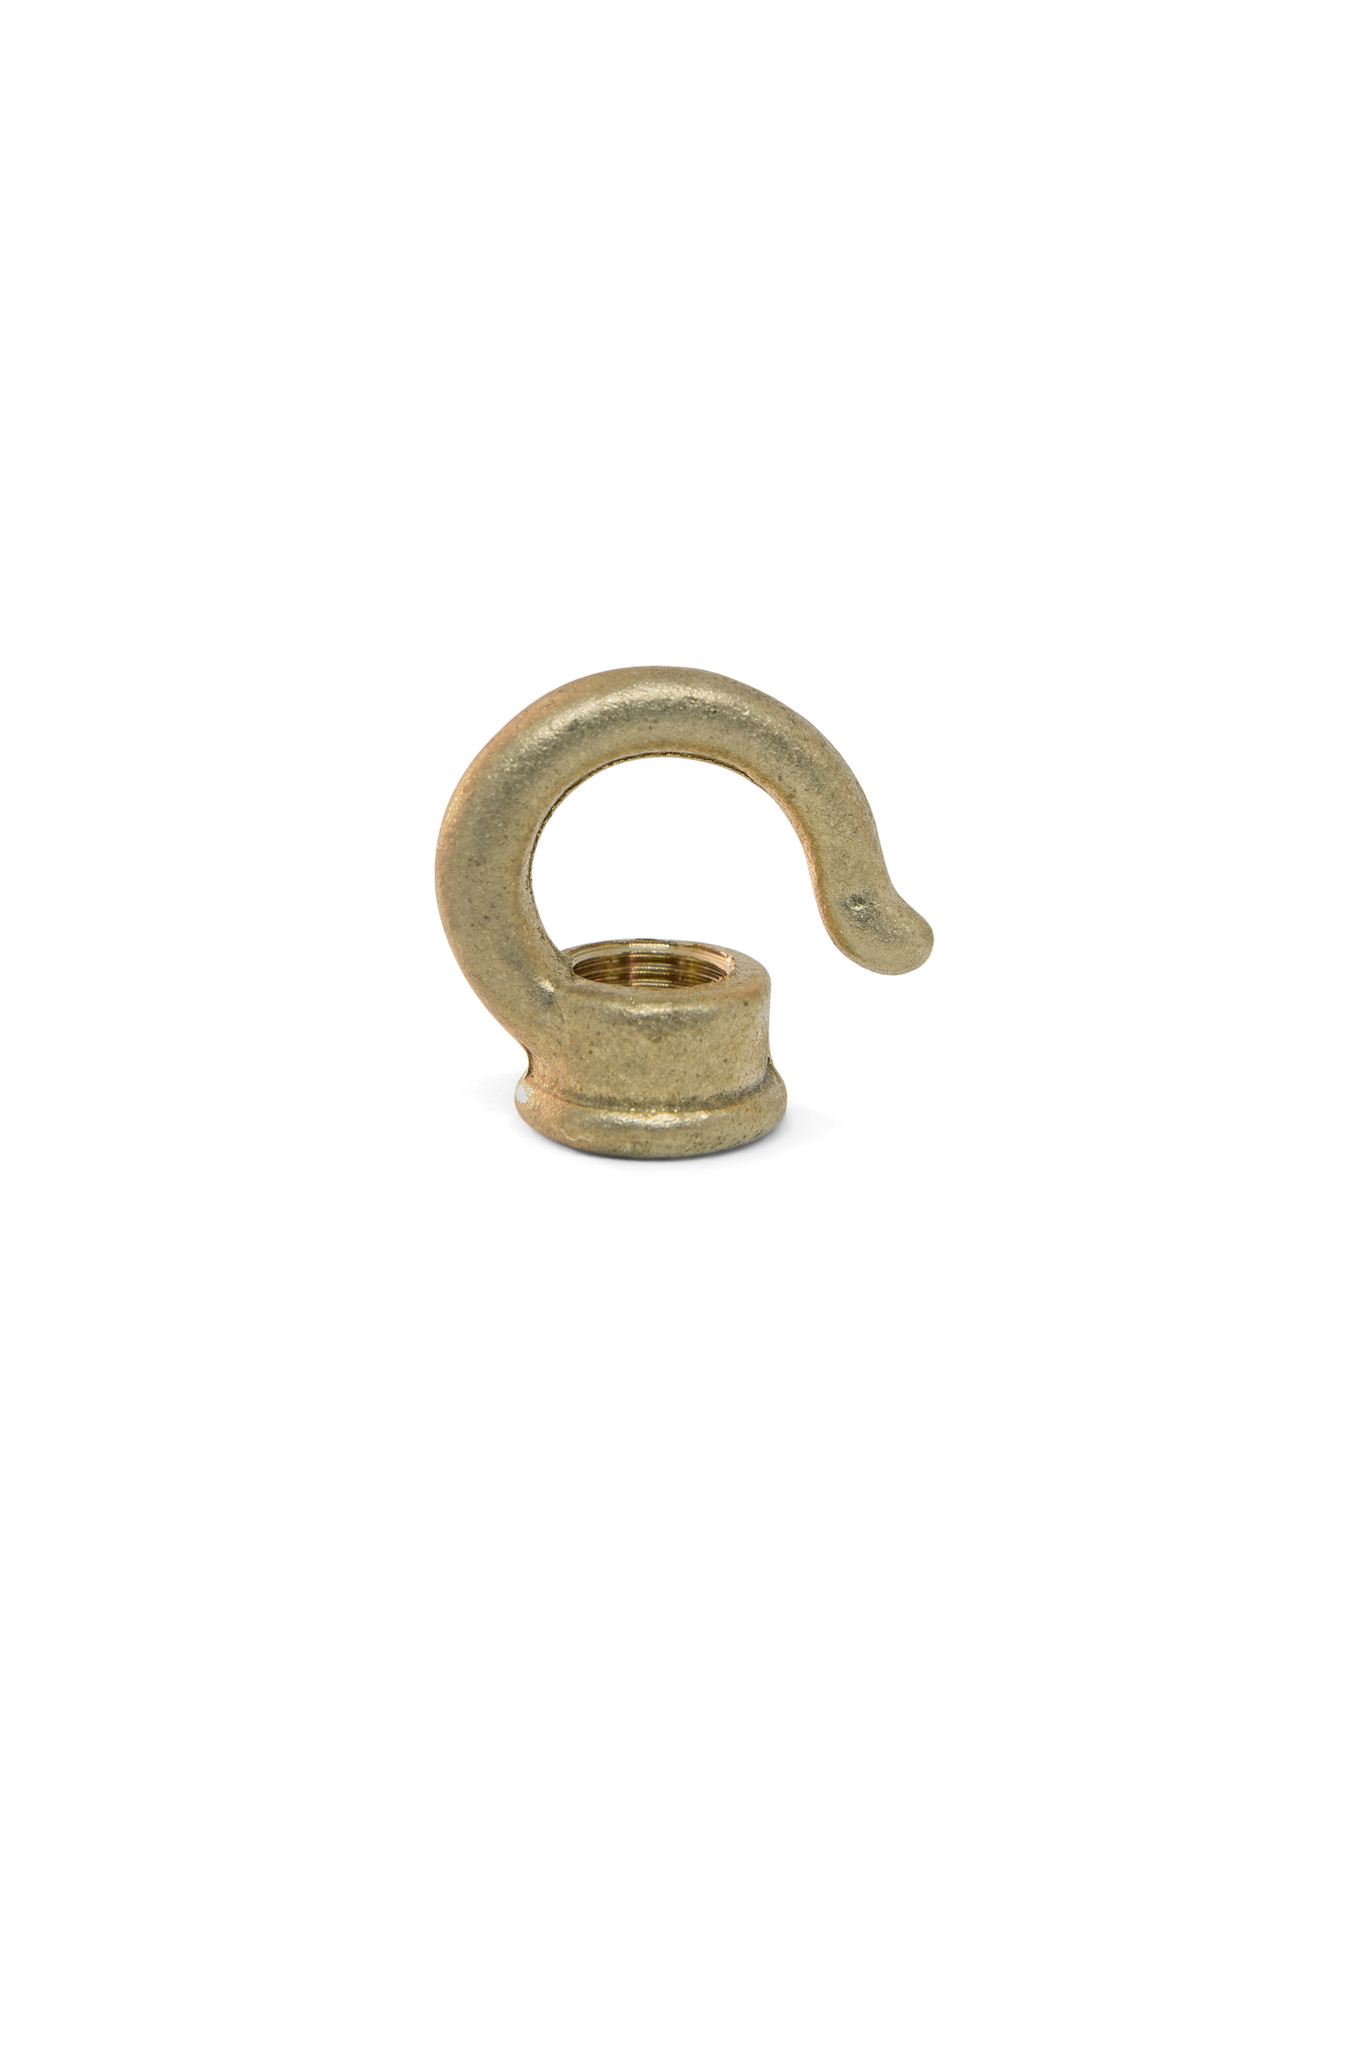 Hook Gripper, Hook to Hang your Lamp, Brass, M10x1 Internal Thread